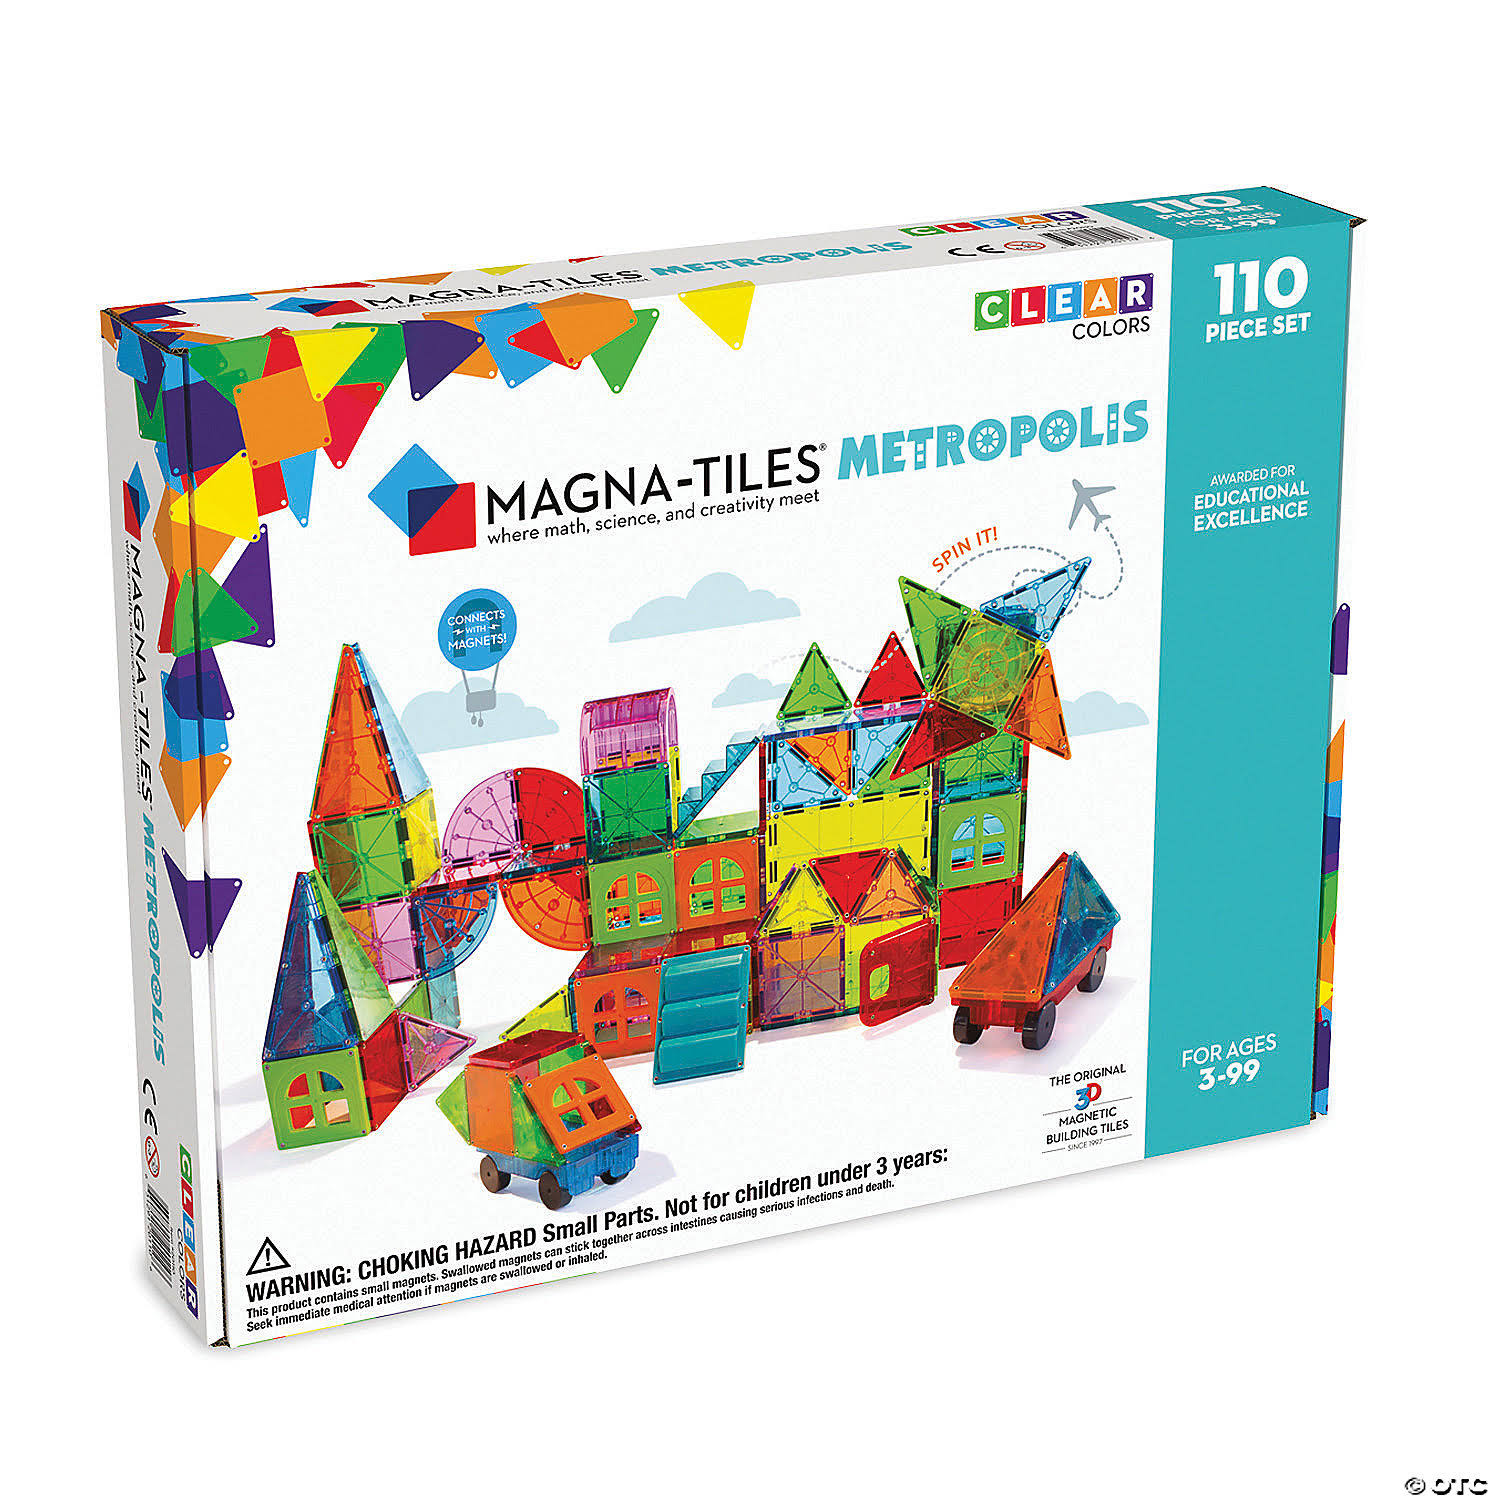 Magna Tiles Metropolis 110 Piece Set - 3D Magnetic Building Tiles